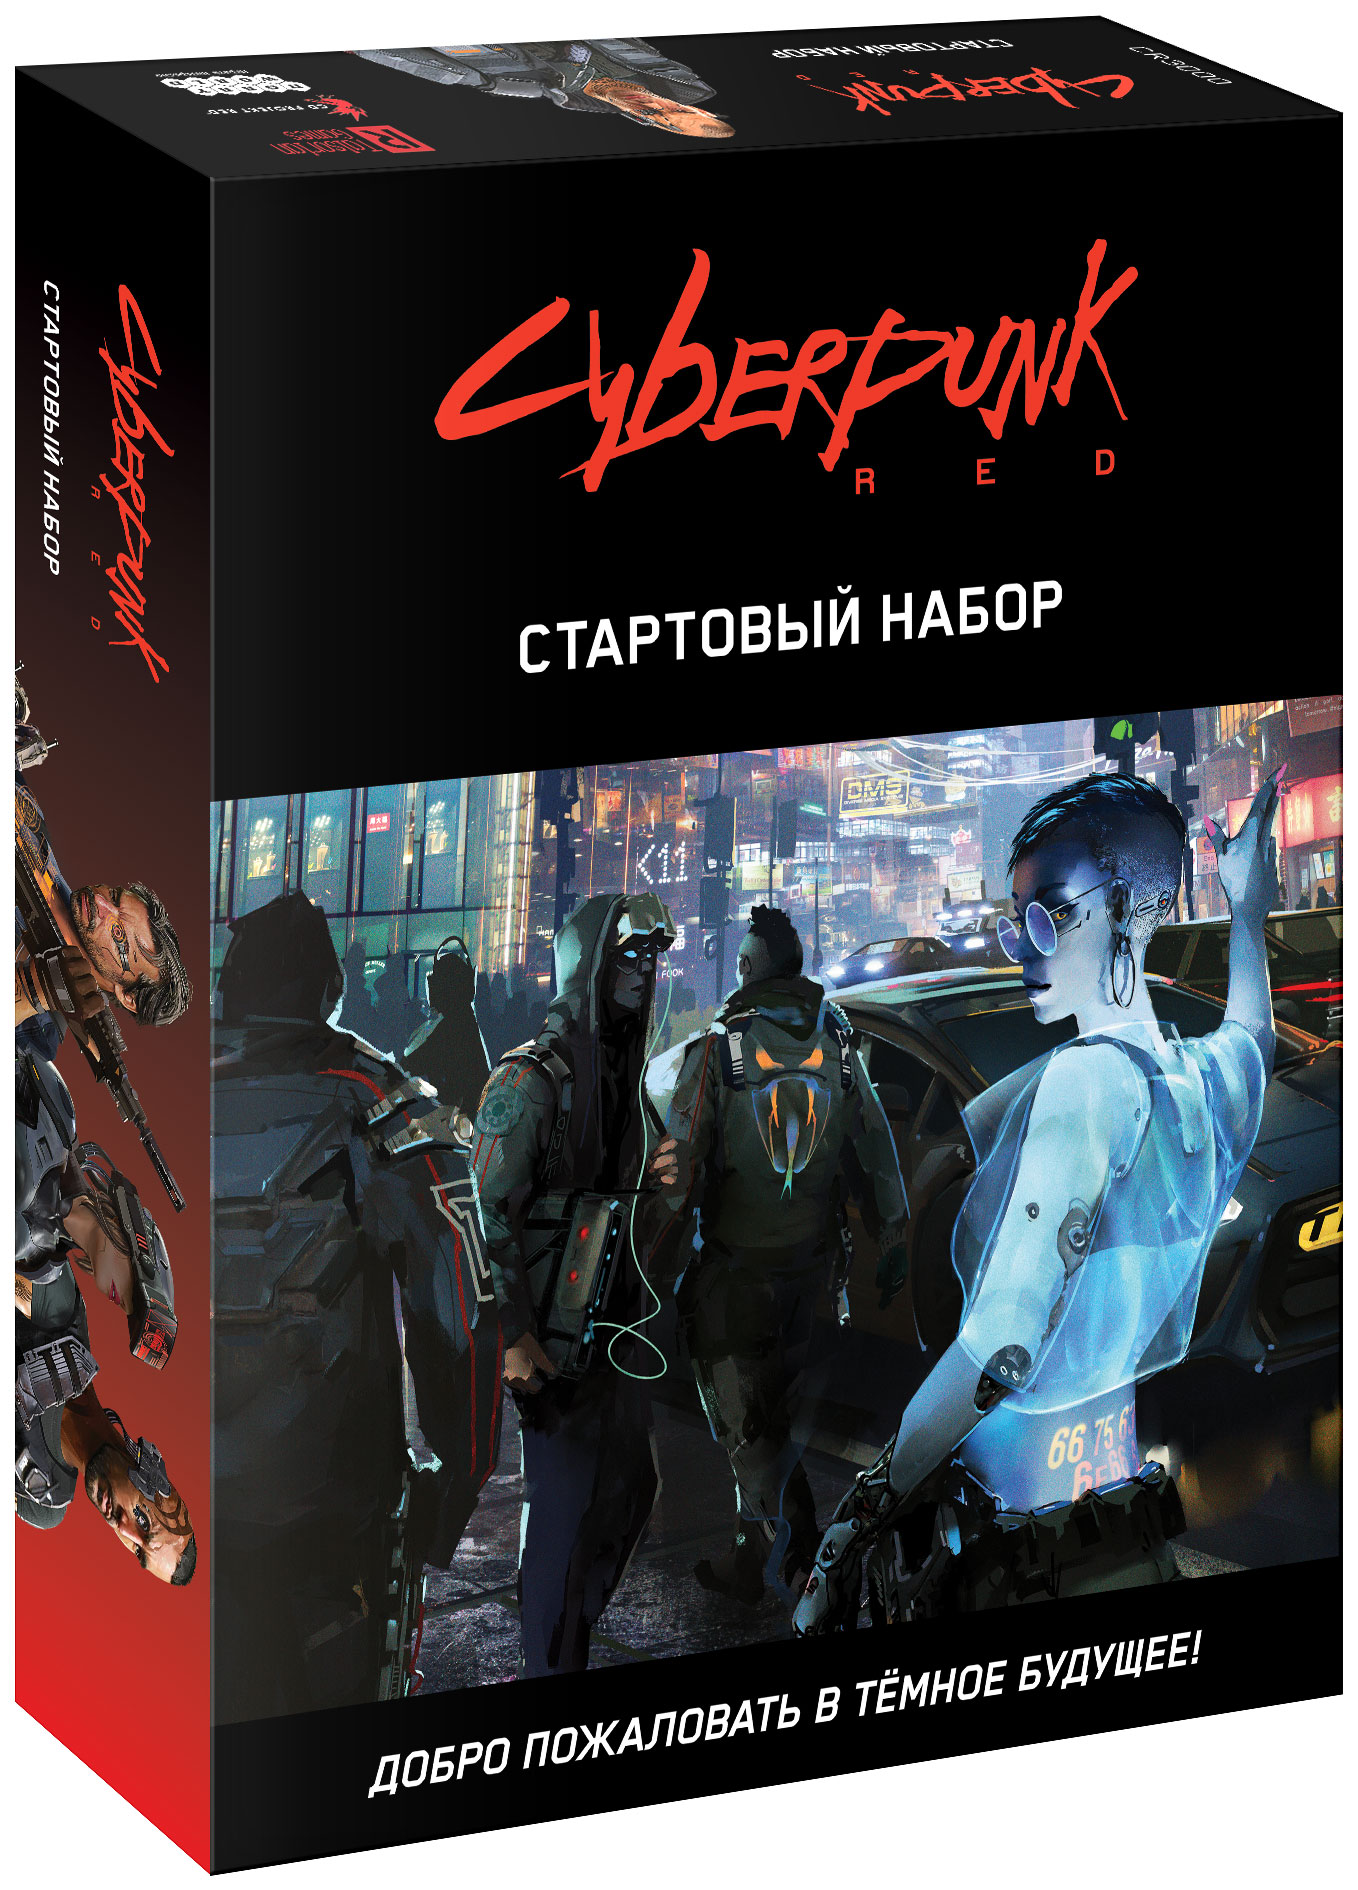 Cyberpunk red настольная игра купить на русском фото 4